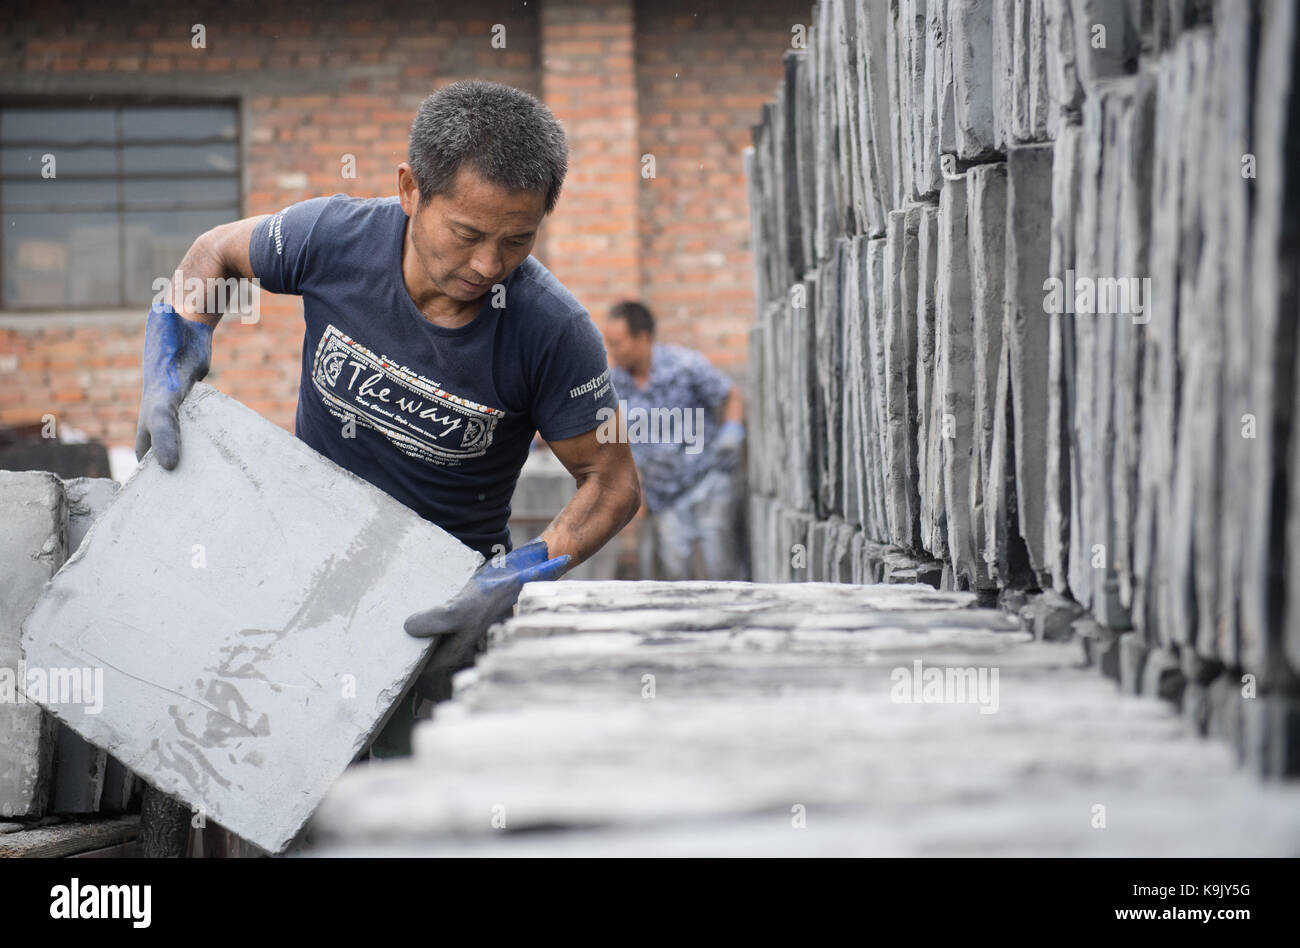 Conghua, der chinesischen Provinz Zhejiang. 23 Sep, 2017. Ein Arbeiter türmt sich Backsteine im Brennofen bei Shenjia Ganyao Township in Yokkaichi Grafschaft von Jiaxing City, der ostchinesischen Provinz Zhejiang, Sept. 23, 2017. Die Steine durch die Shenjia Brennofen an Ganyao Gemeinde produziert haben einen guten Ruf im ganzen Land durch seine Strenge. Der brennofen Erträge jetzt 600.000 Steine in verschiedenen Größen jedes Jahr. Die Technik des Shenjia Brennofen wurde als provinzielle immaterielles Kulturerbe, die von Zhejiang Provinz im Jahr 2006 aufgeführt. Credit: Weng Xinyang/Xinhua/Alamy leben Nachrichten Stockfoto